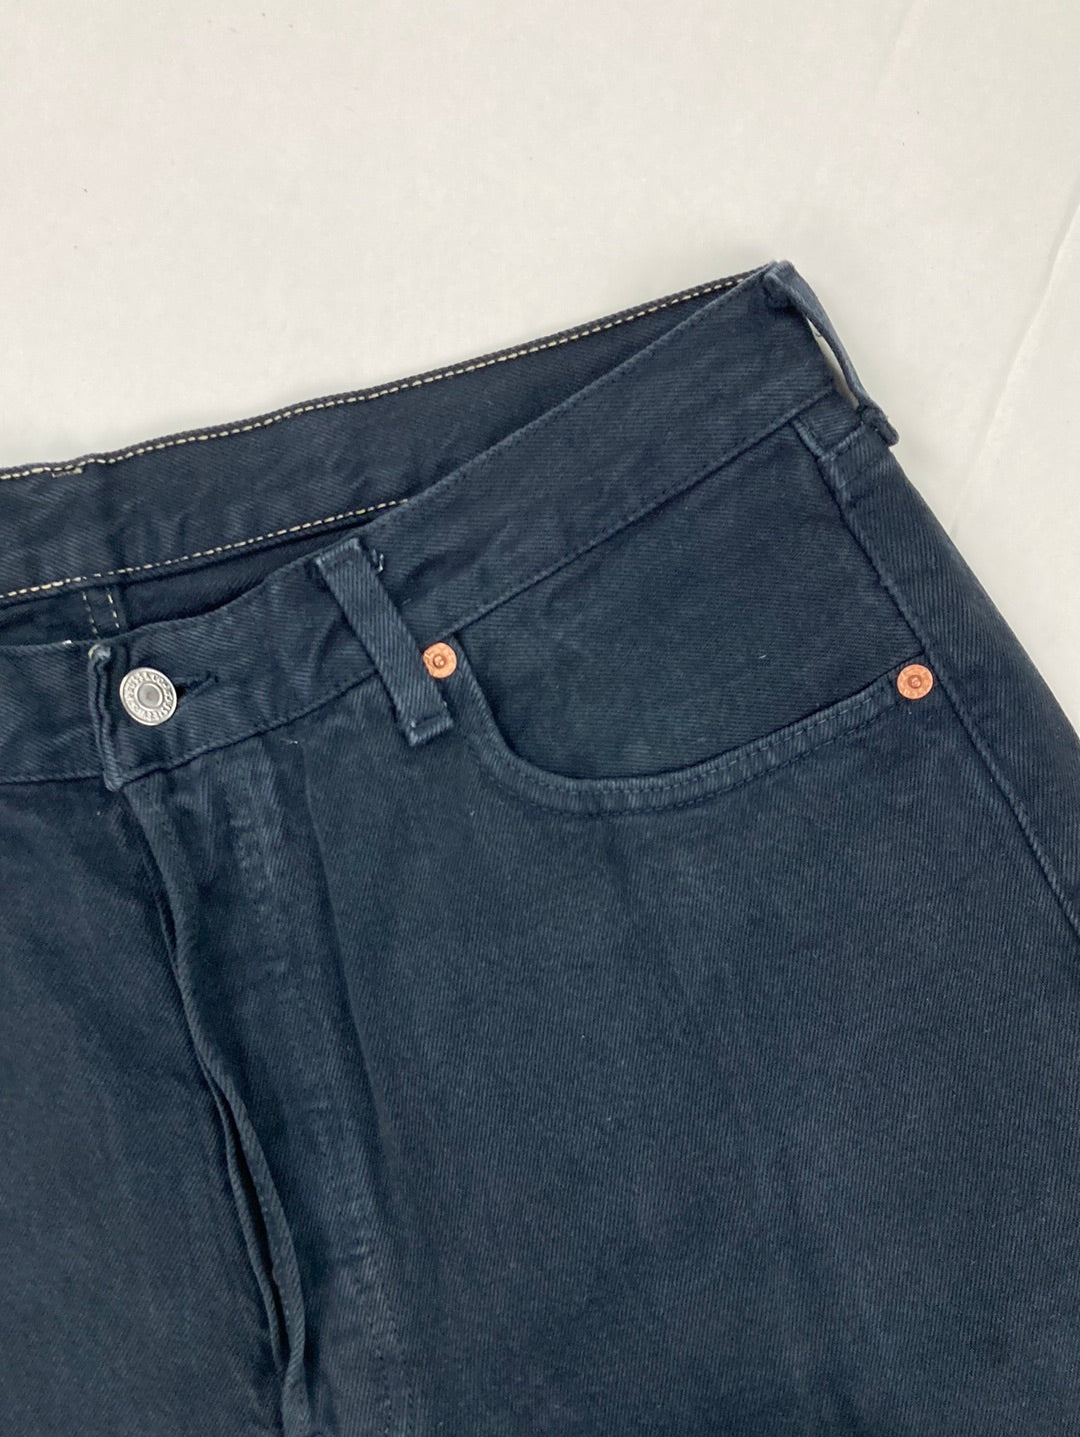 Levi’s 501 Jeans 34/30 (L)